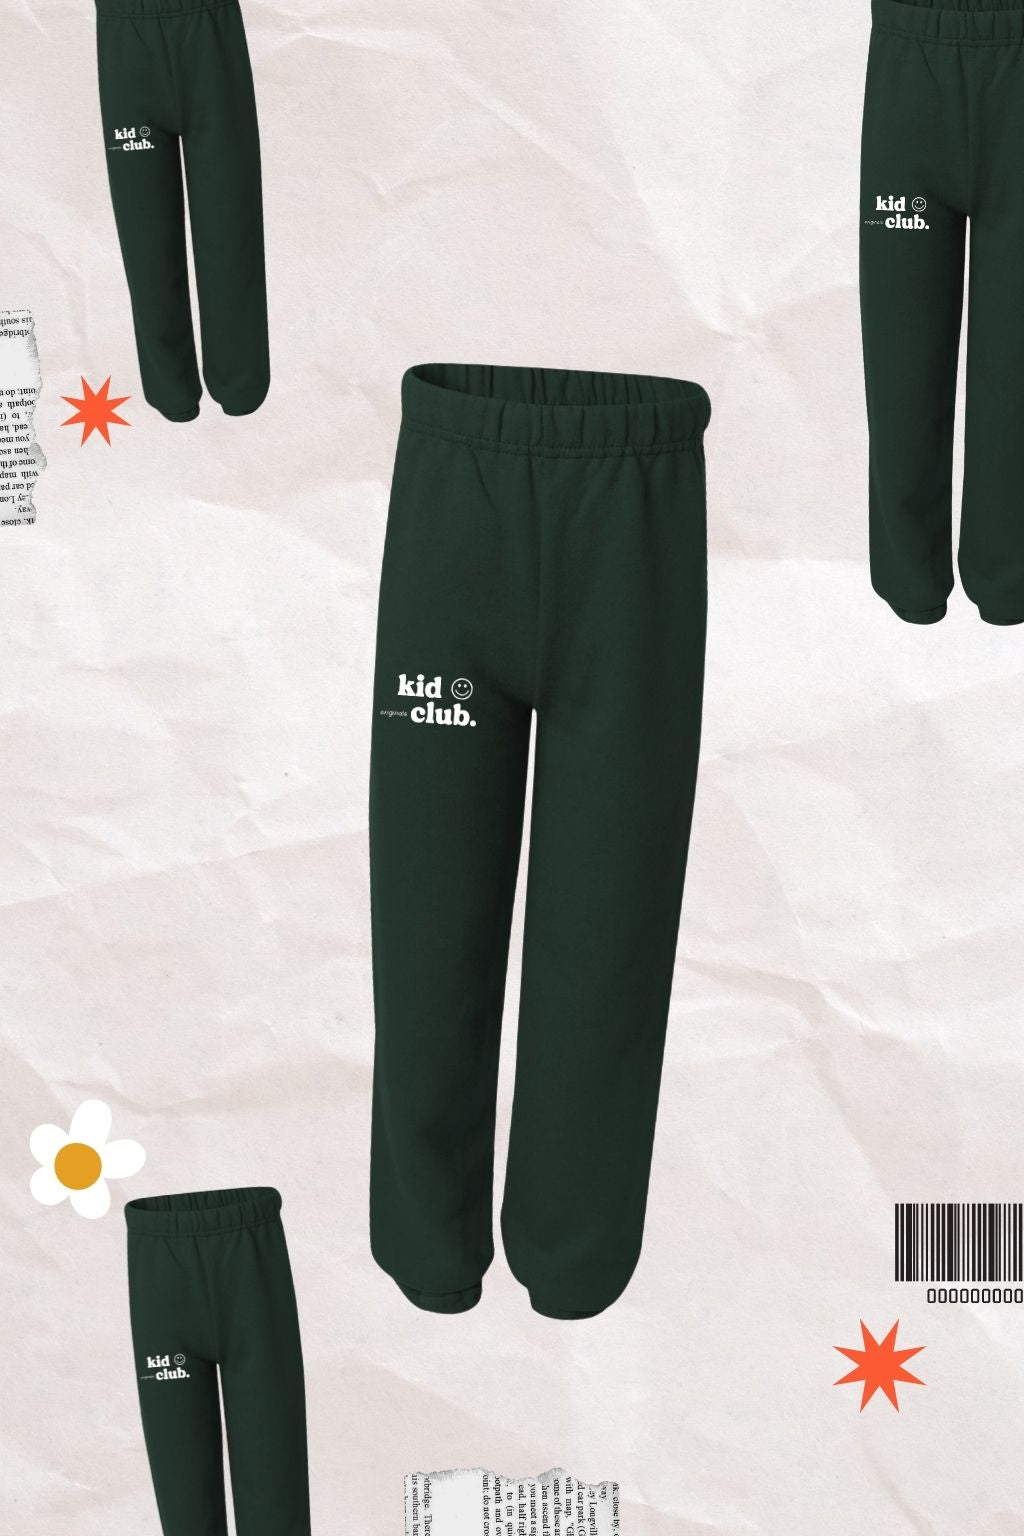 Kid Club Originals Green Sweatpants